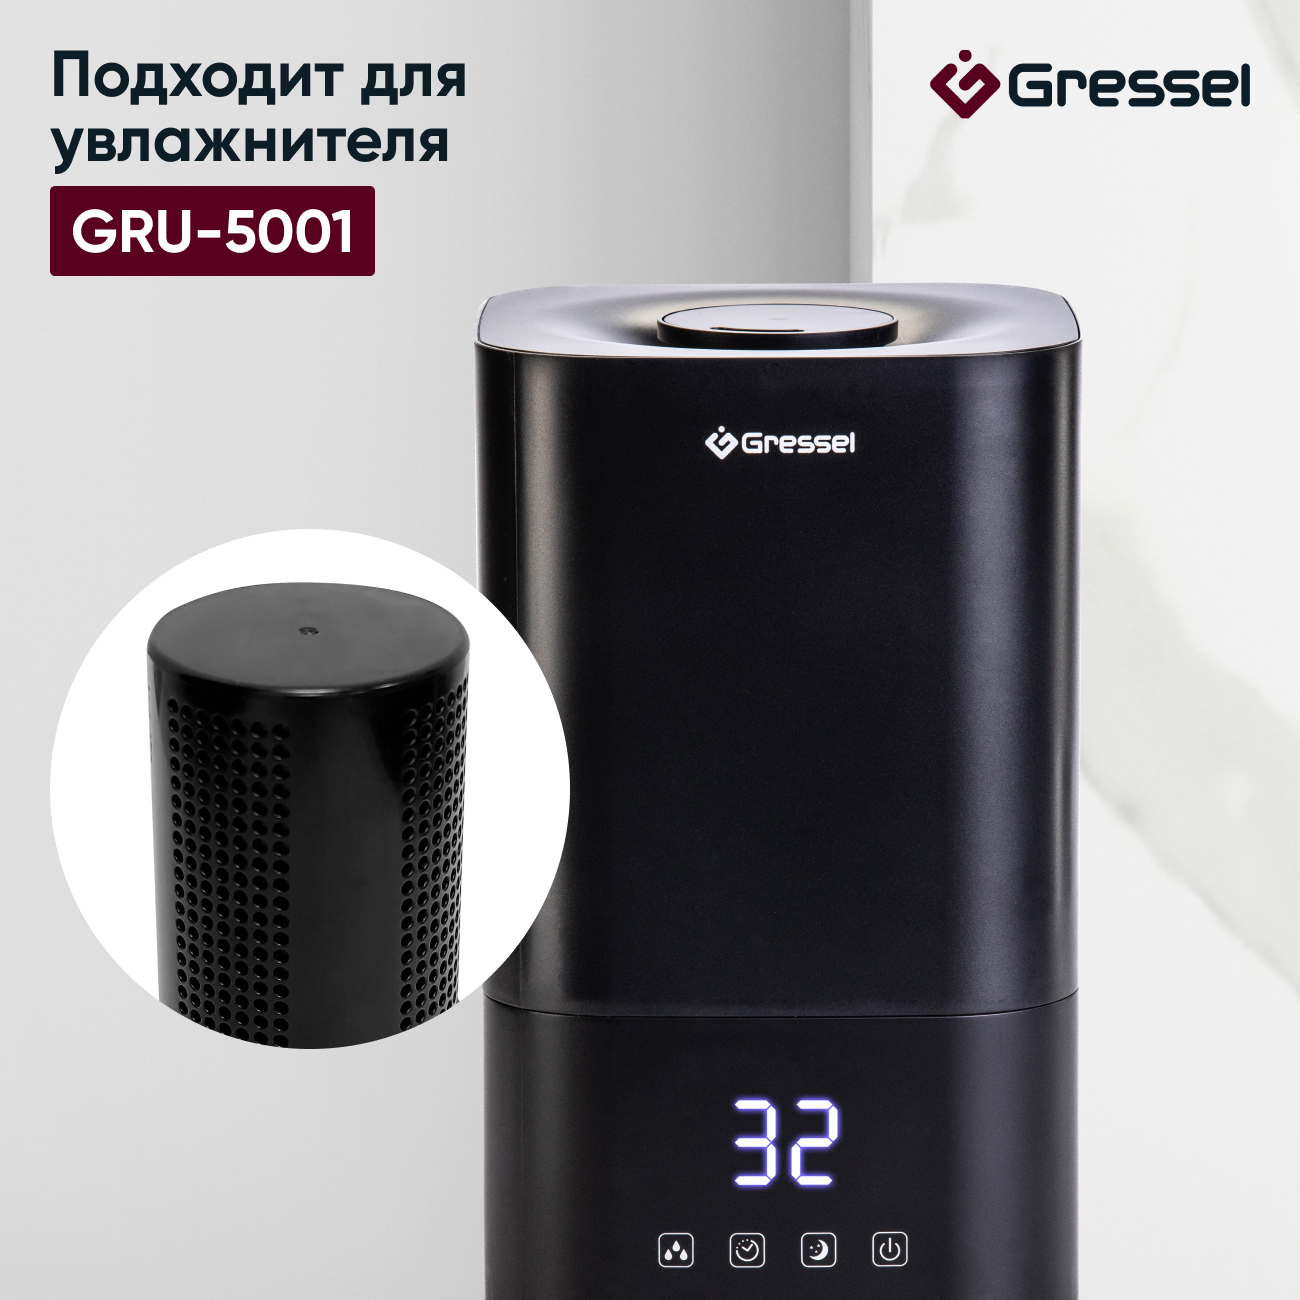 Фильтр увлажнителя воздуха Gressel G-5001 для модели GRU-5001 фен delta de 5001 2200 вт черный